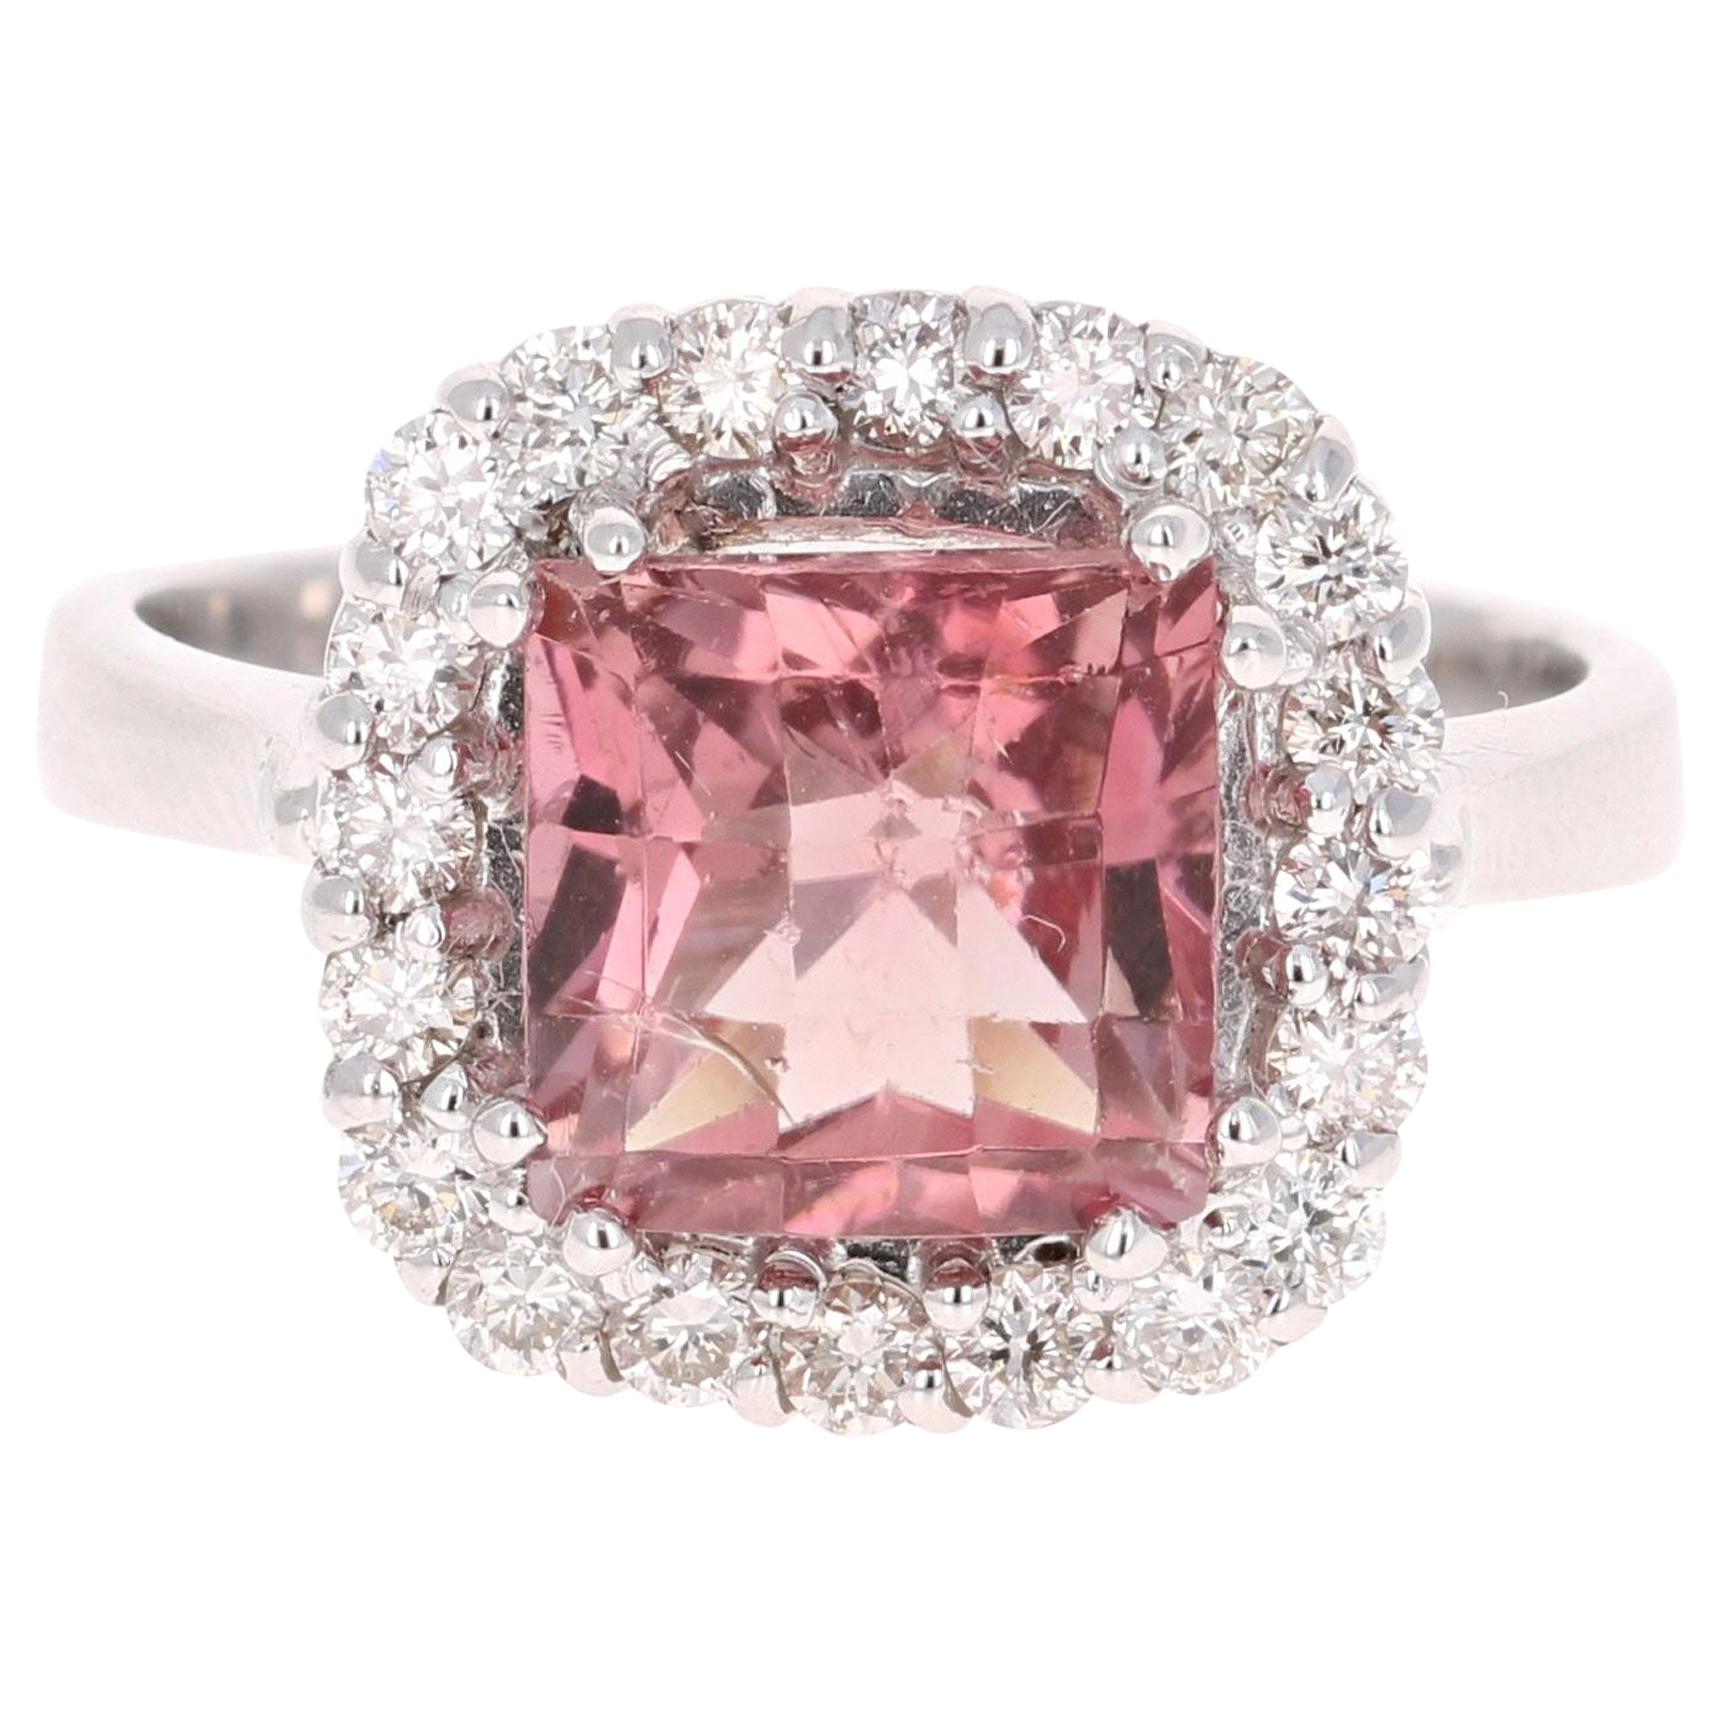 3.89 Carat Pink Tourmaline Diamond 14 Karat White Gold Ring